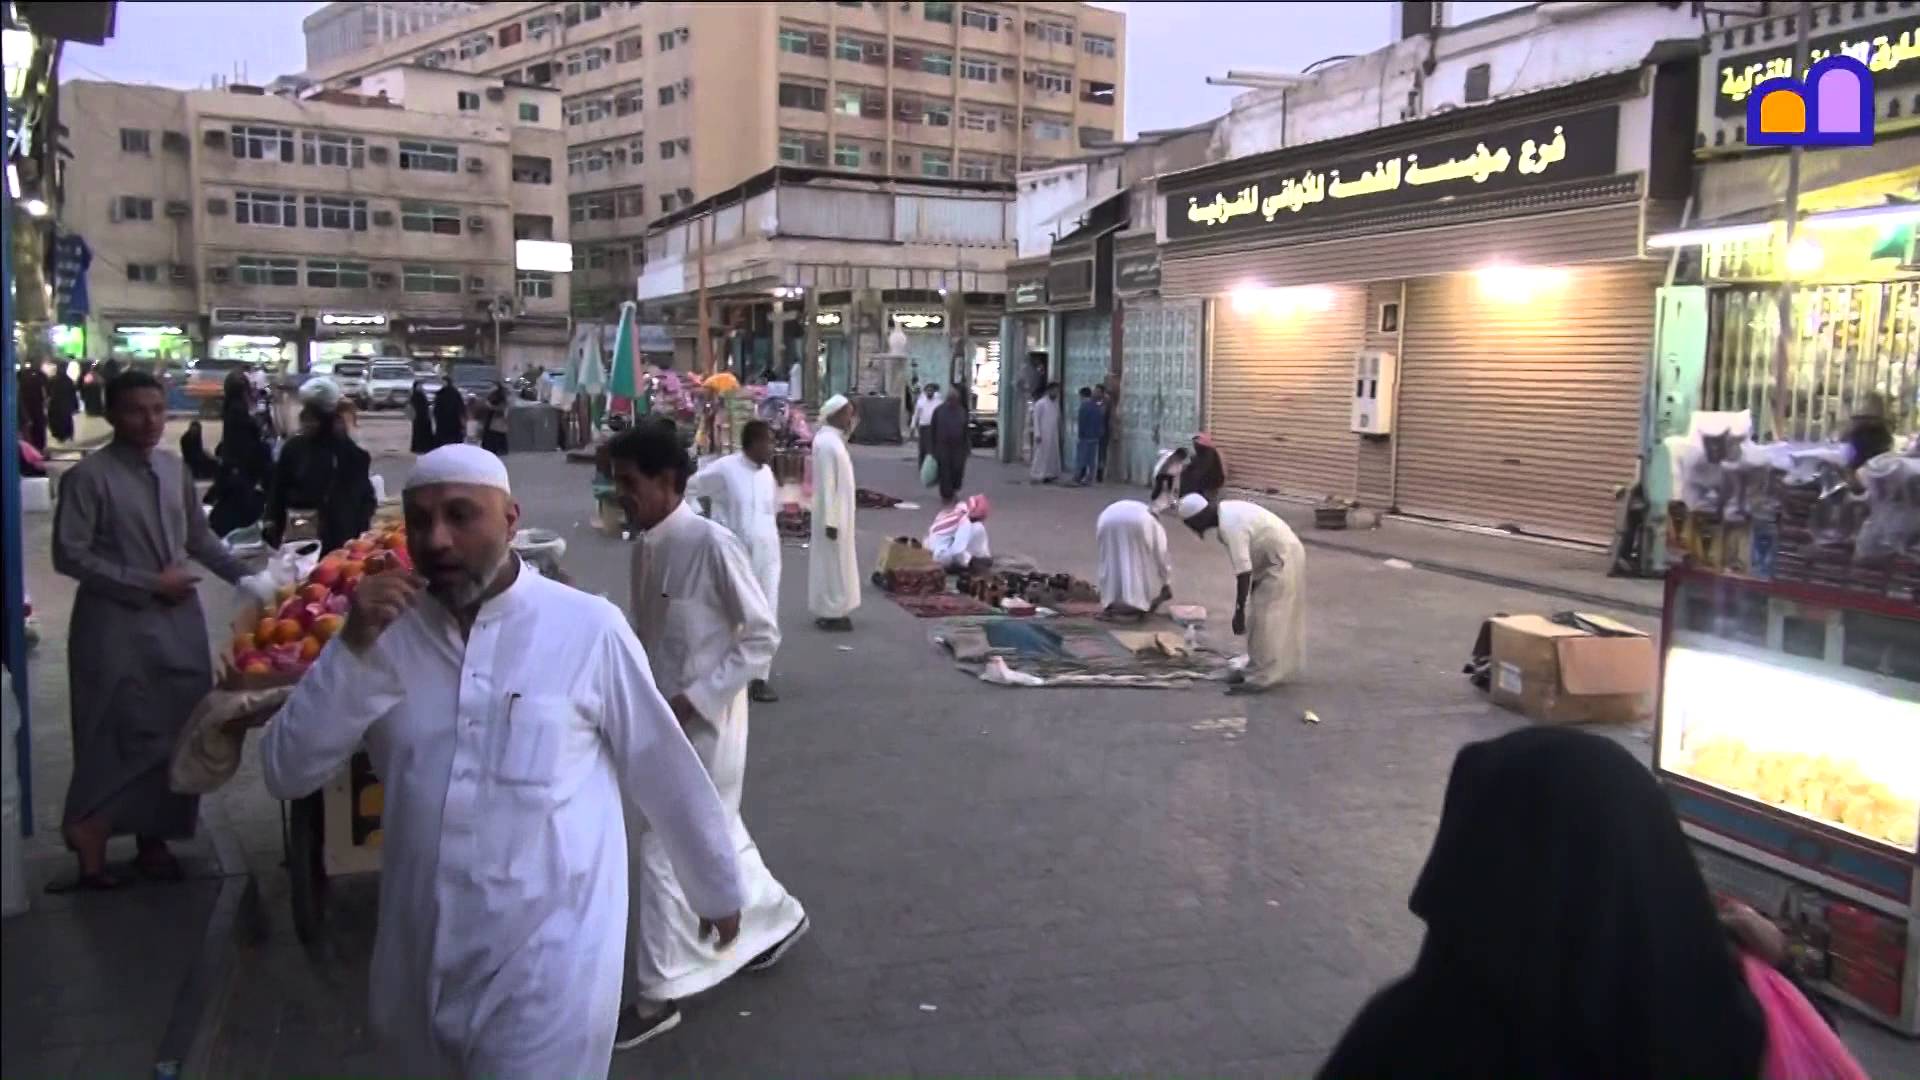 Saudi Arabia - Jeddah evening prayer - YouTube